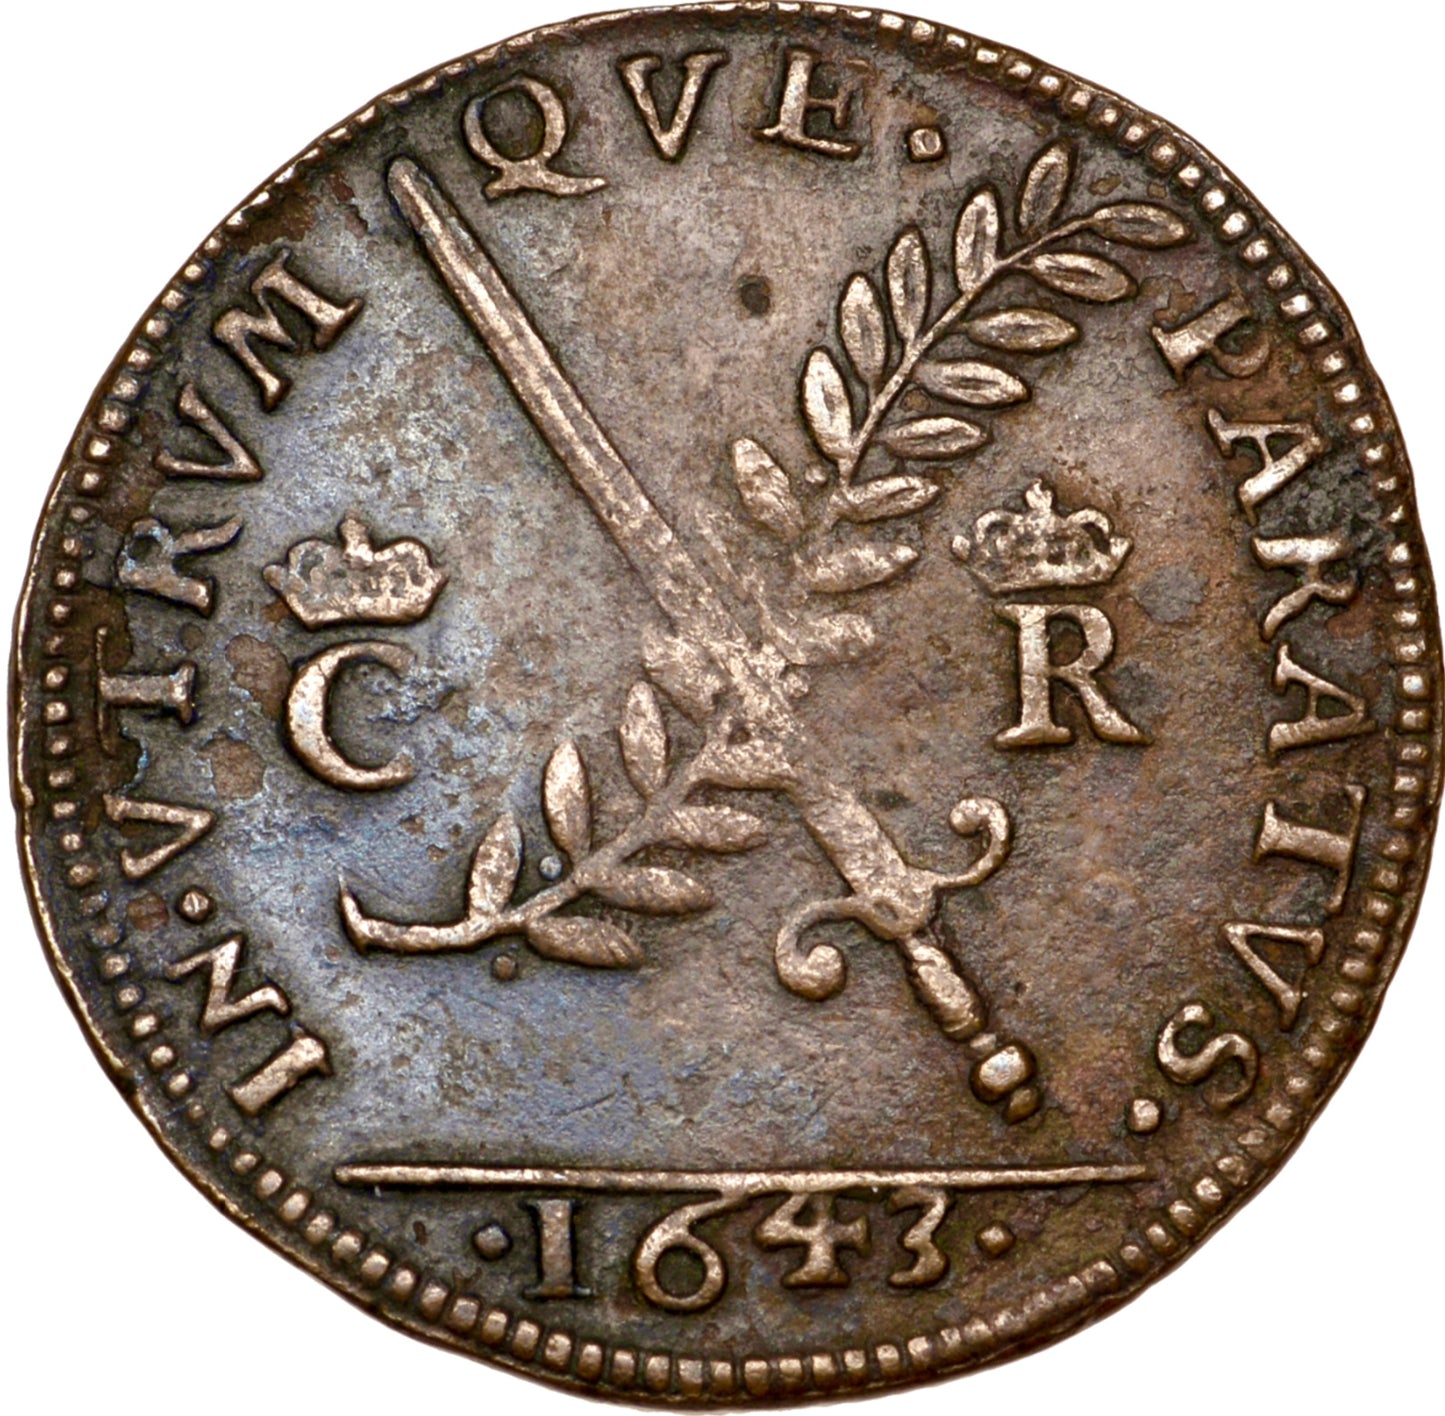 1643 Peace or War 29mm copper medal MI 309/134 E 142 GVF